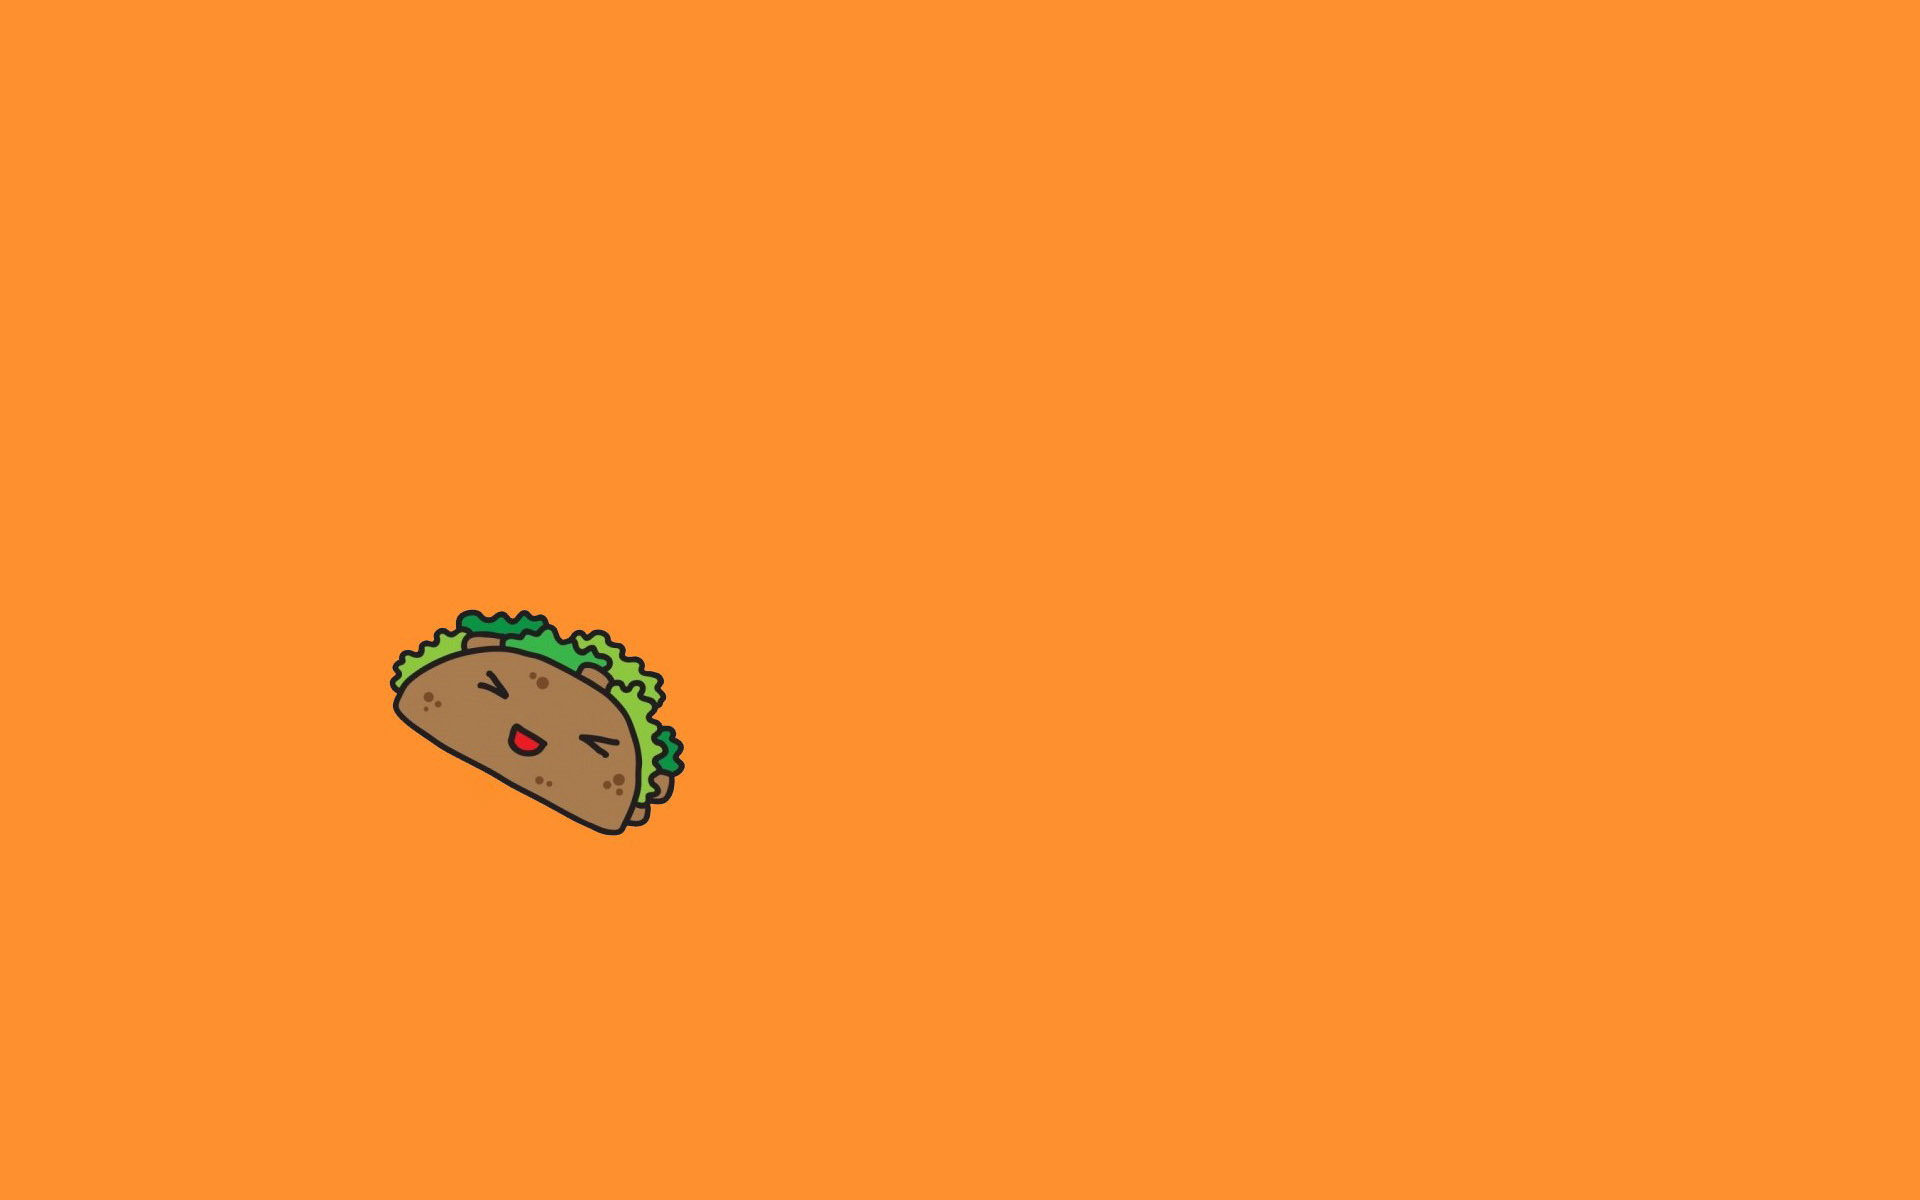 fond d'écran taco bell,orange,vert,police de caractère,illustration